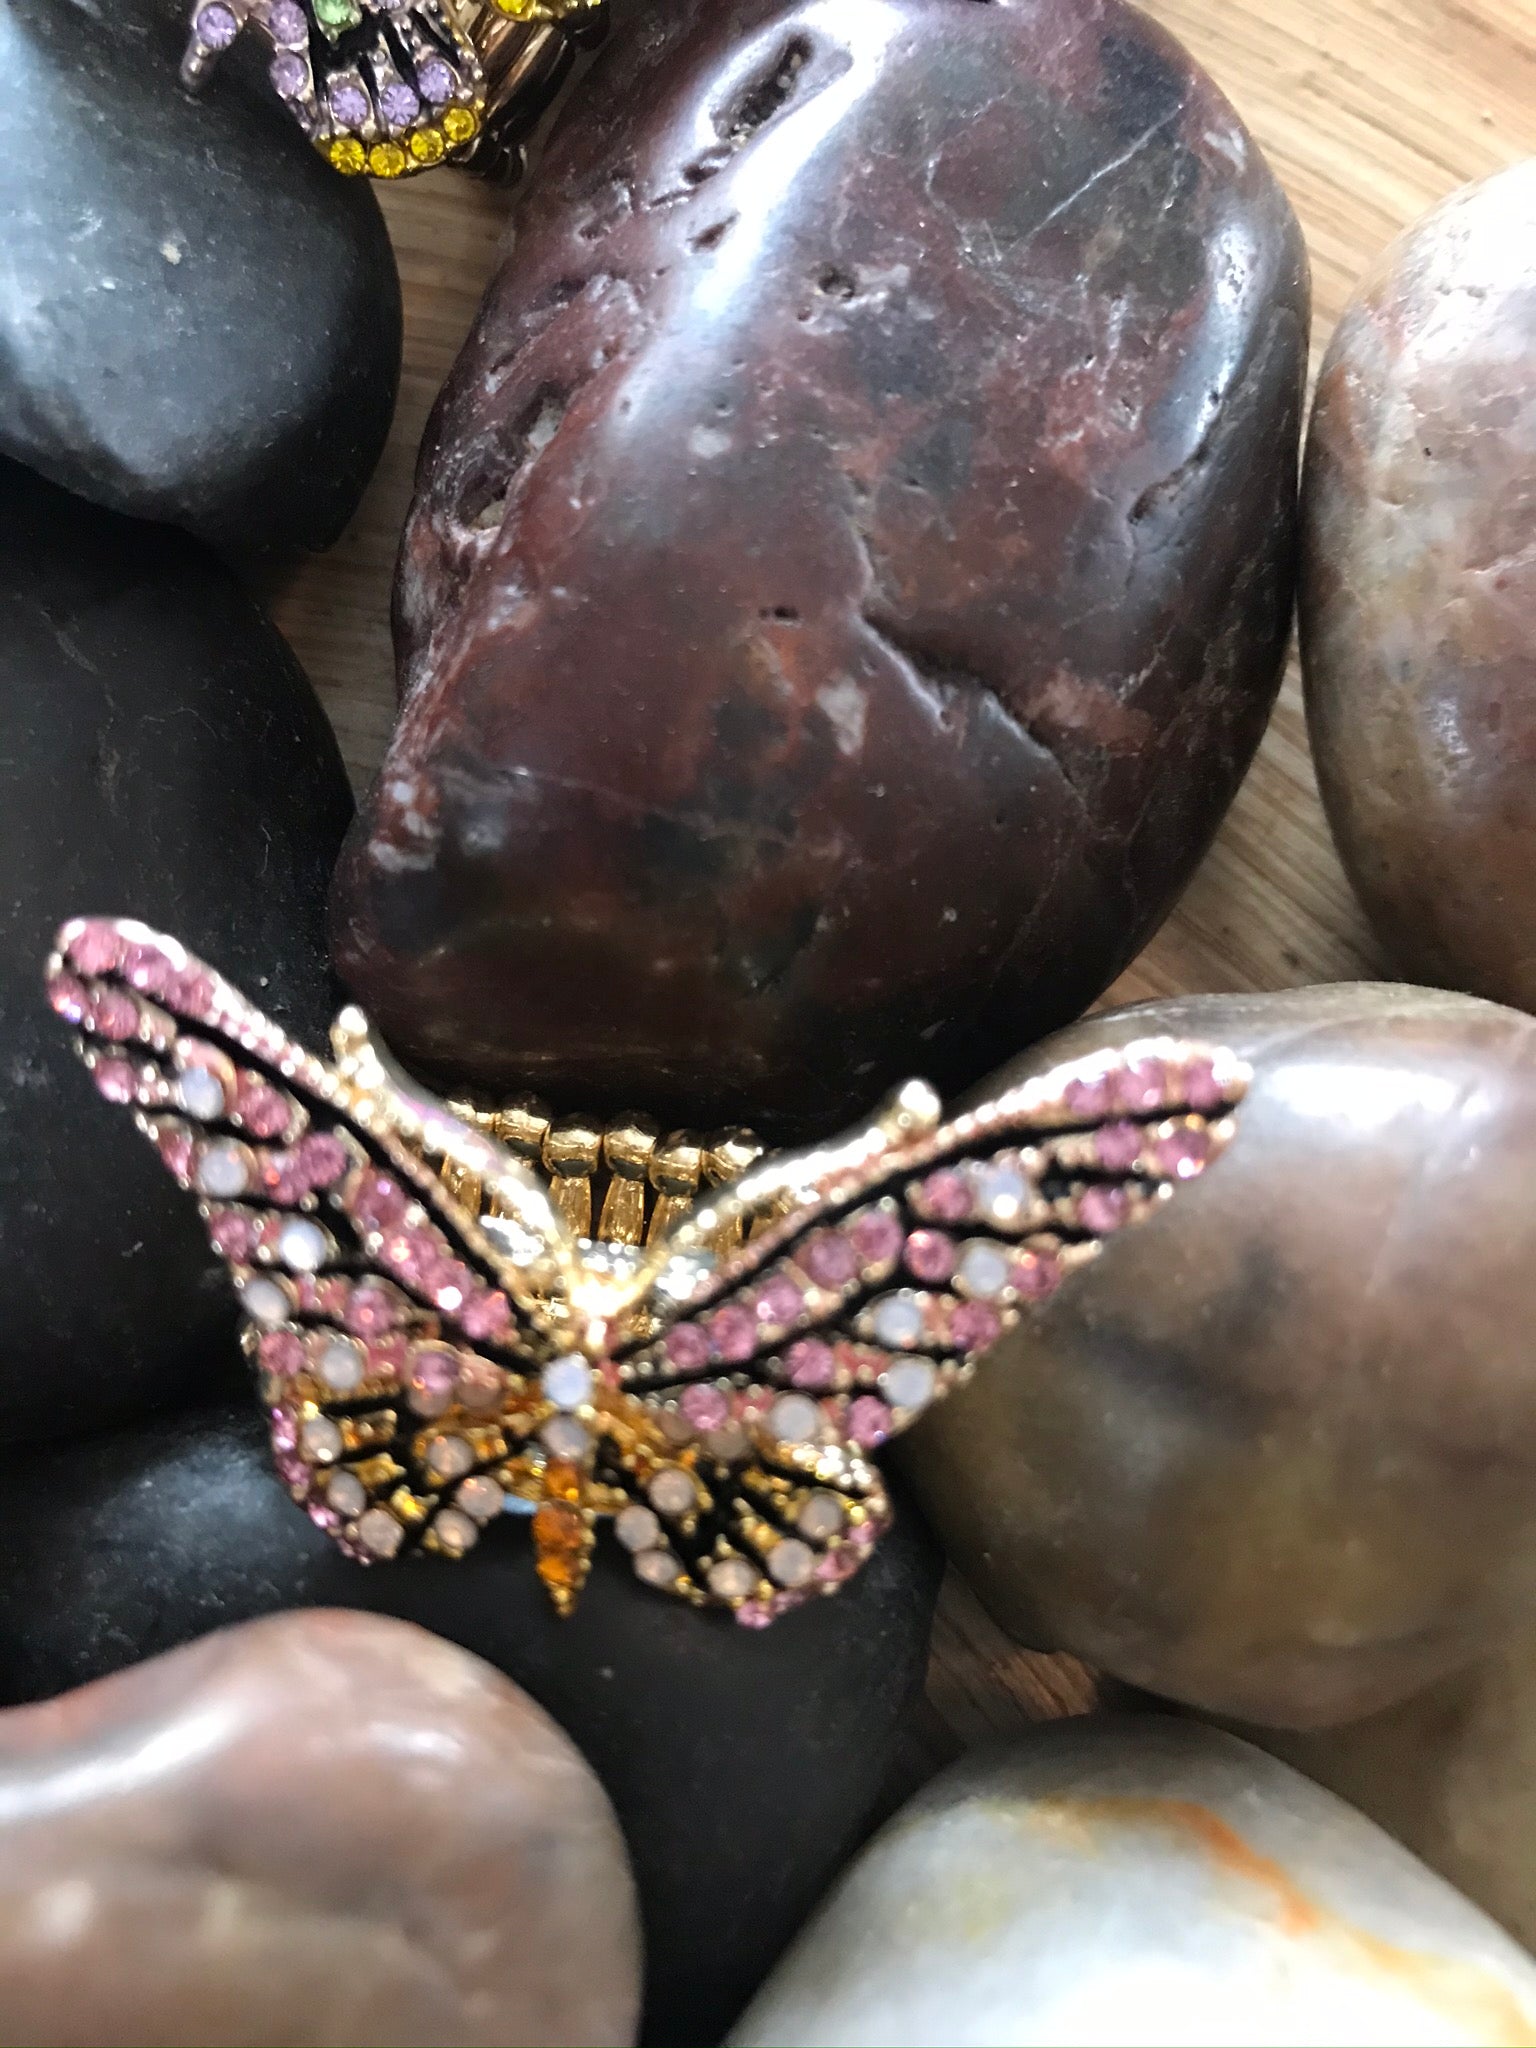 Butterflies Flutter By